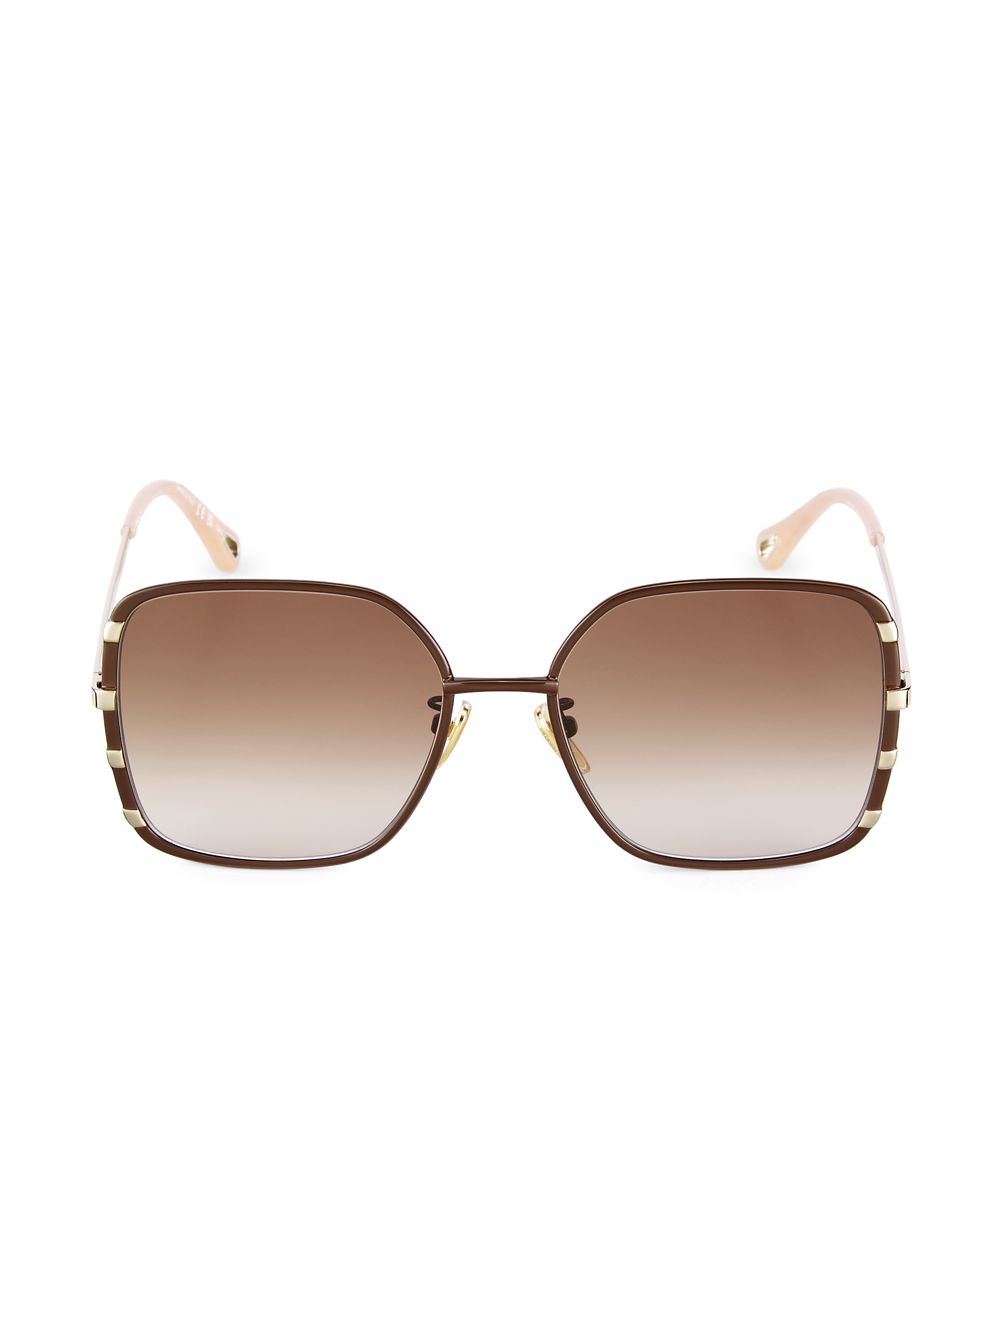 Квадратные металлические солнцезащитные очки Celeste 59 мм Chloé, коричневый